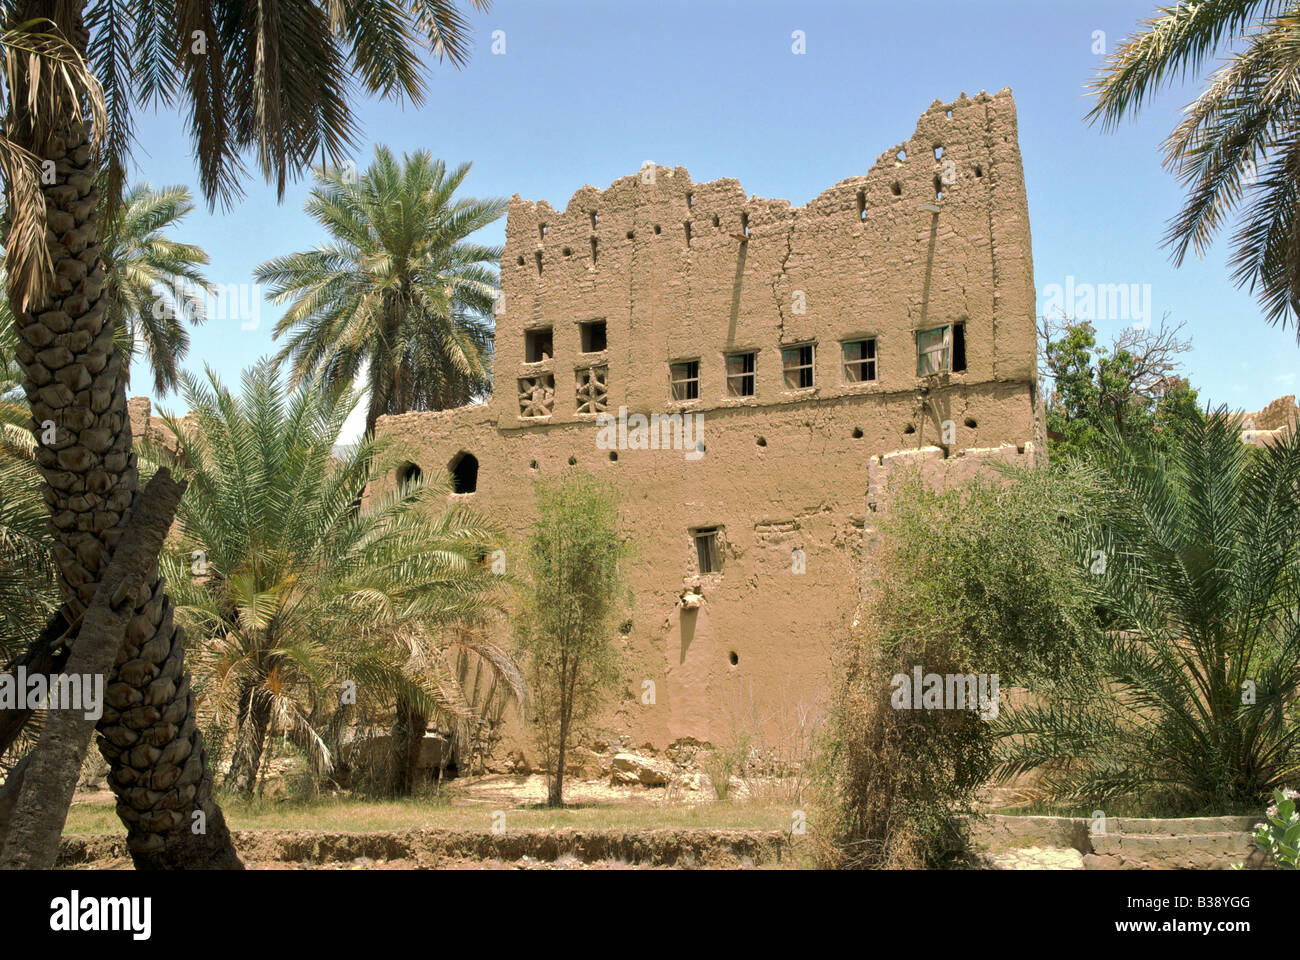 Deux étages typiques de l'argile et le bois en décomposition de la chambre Al Hamra Al Région Dakhiliyah Sultanat d'Oman Banque D'Images